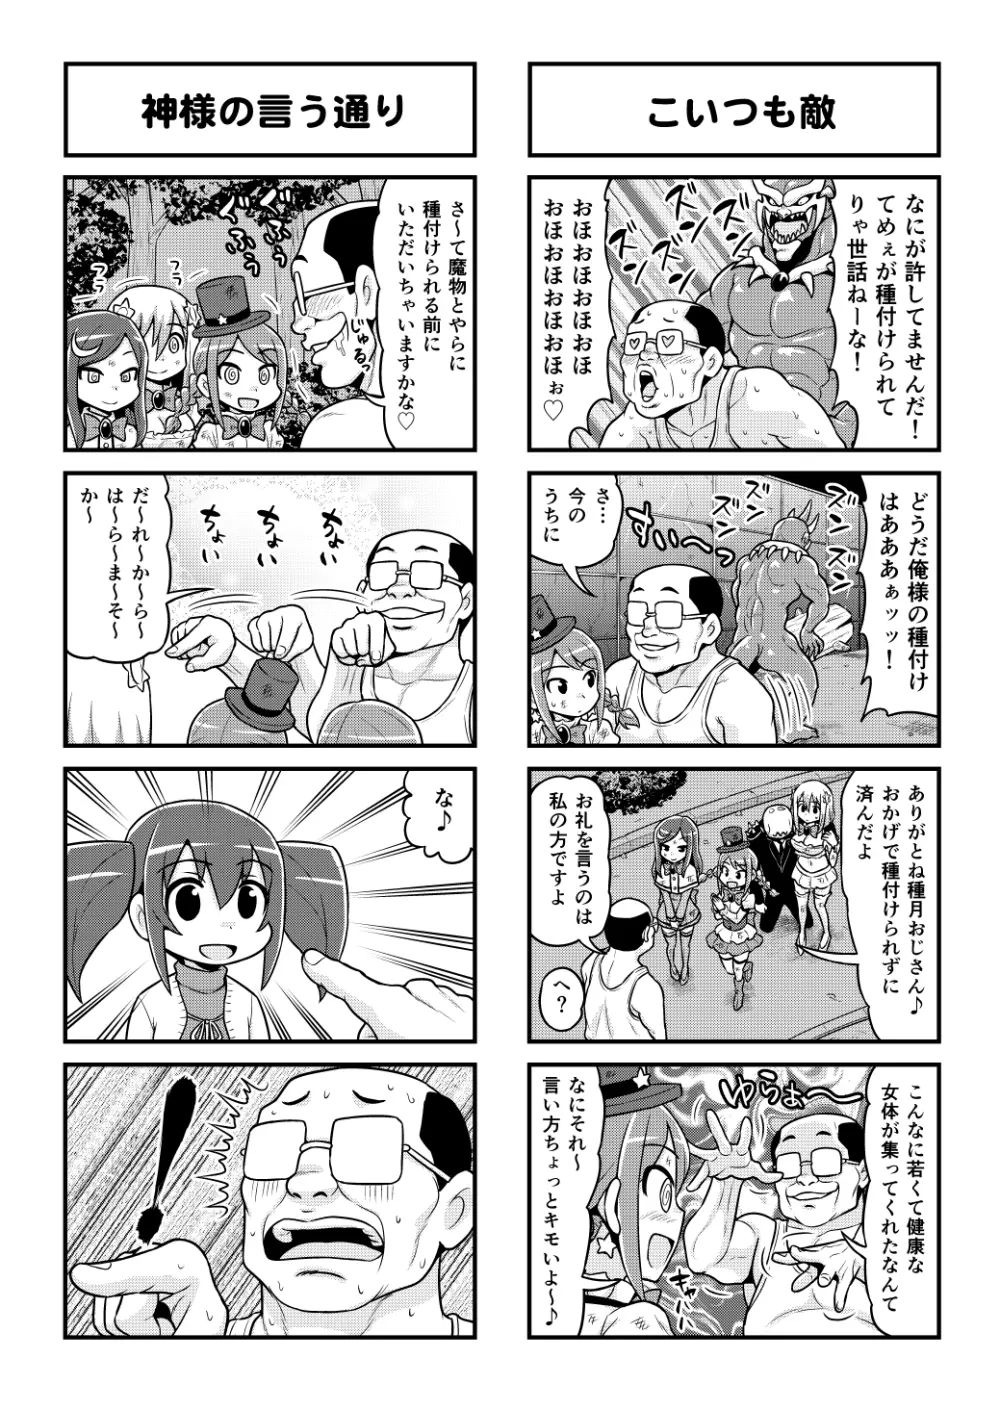 のんきBOY 1-48 - page415